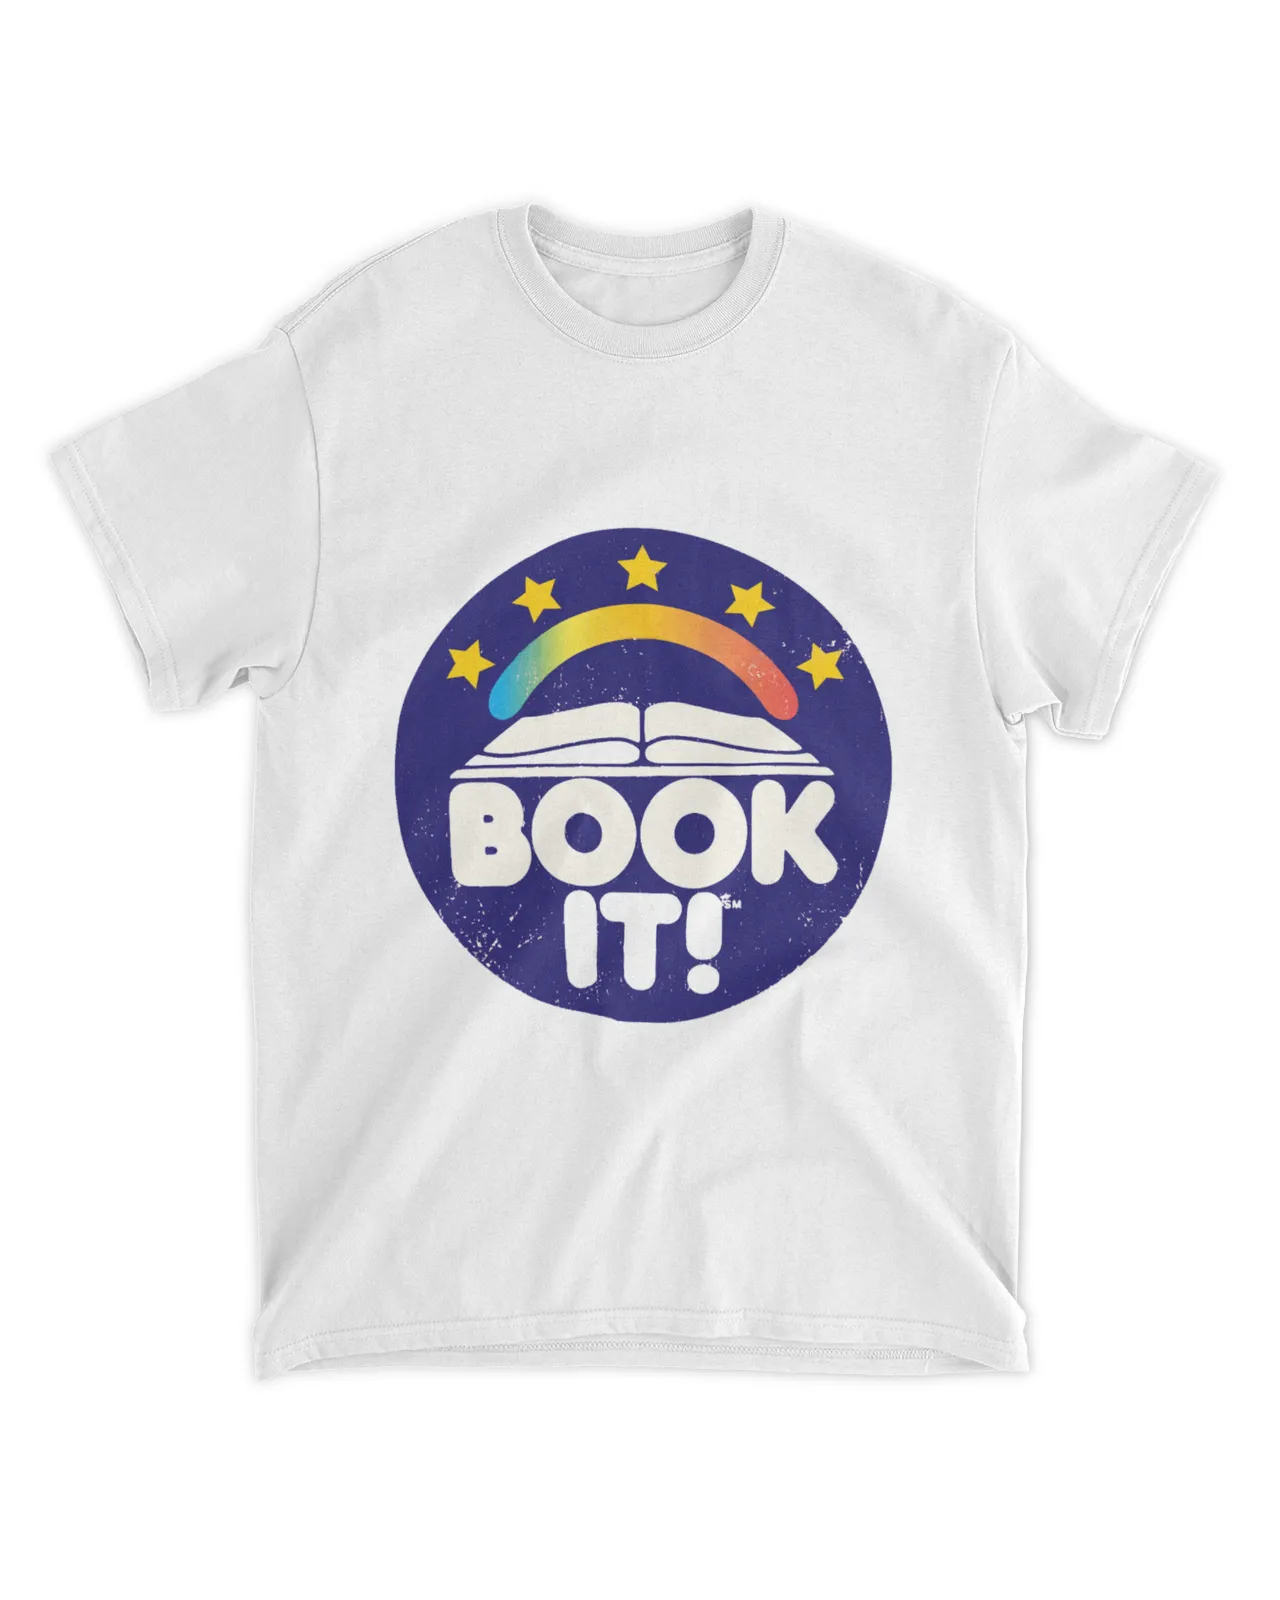 Book It shirt